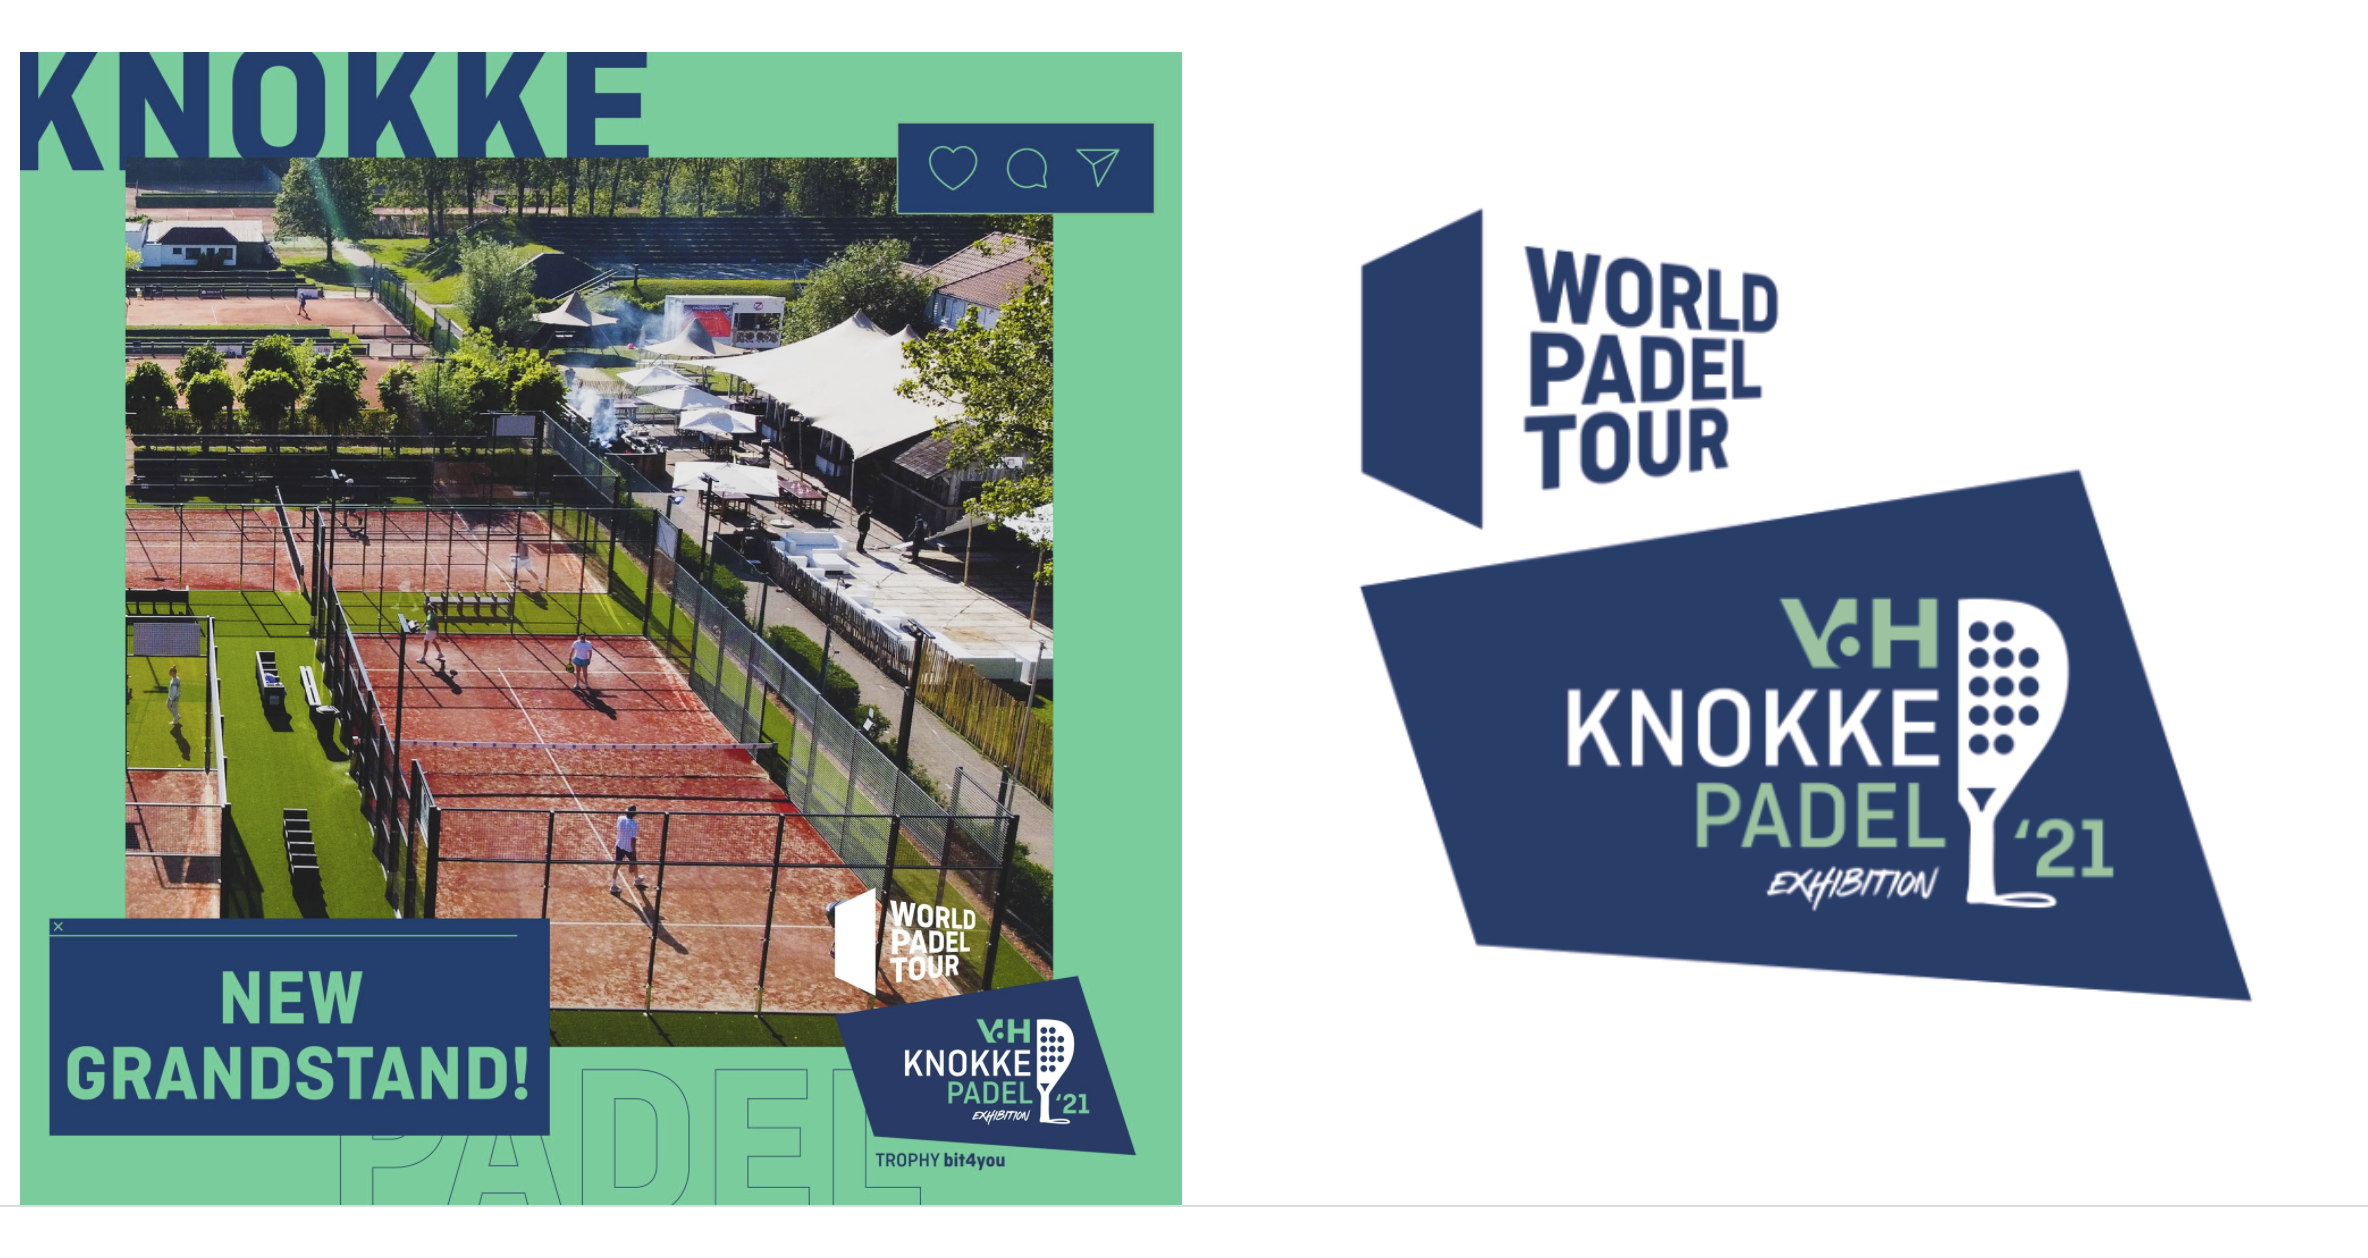 World Padel Tour Knokke 2021: está acontecendo!